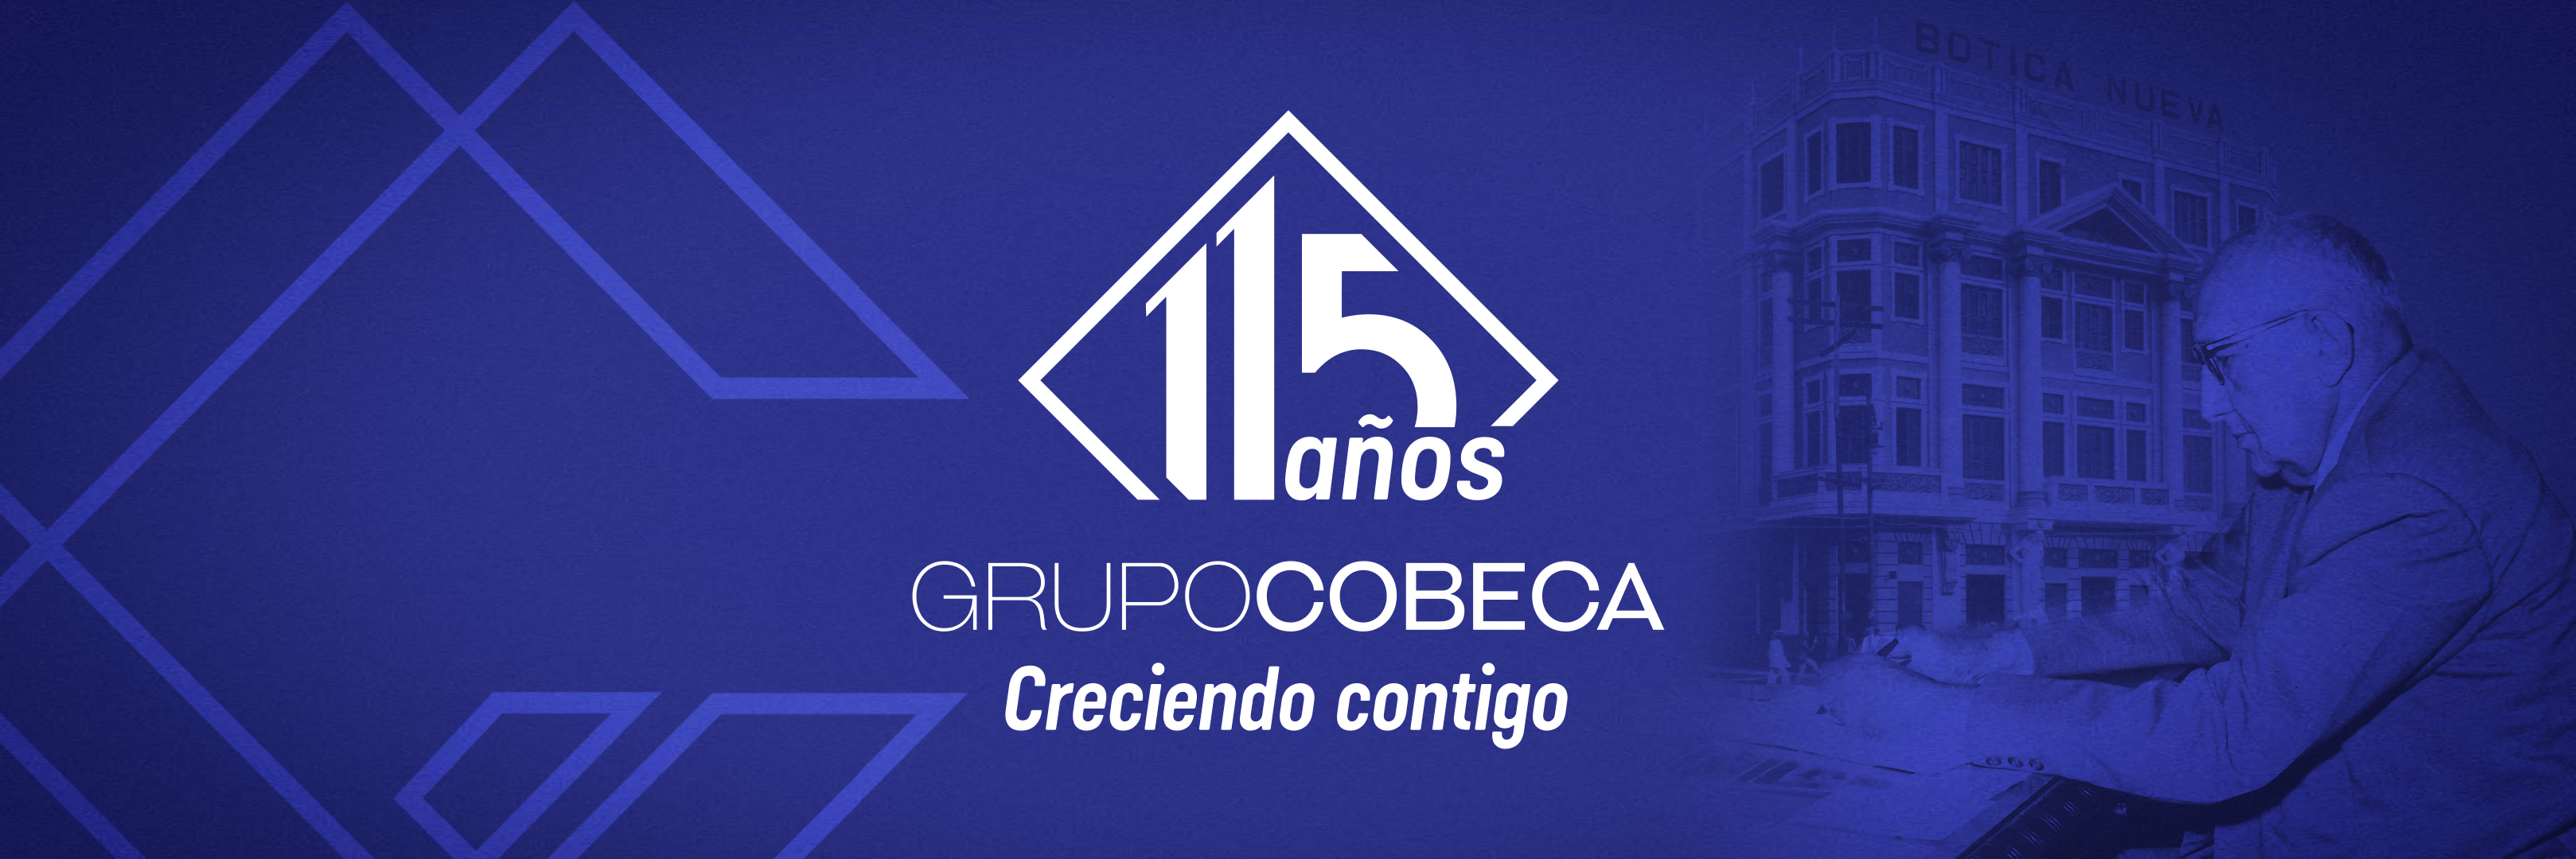 Grupo COBECA: Una empresa centenaria al servicio de los venezolanos